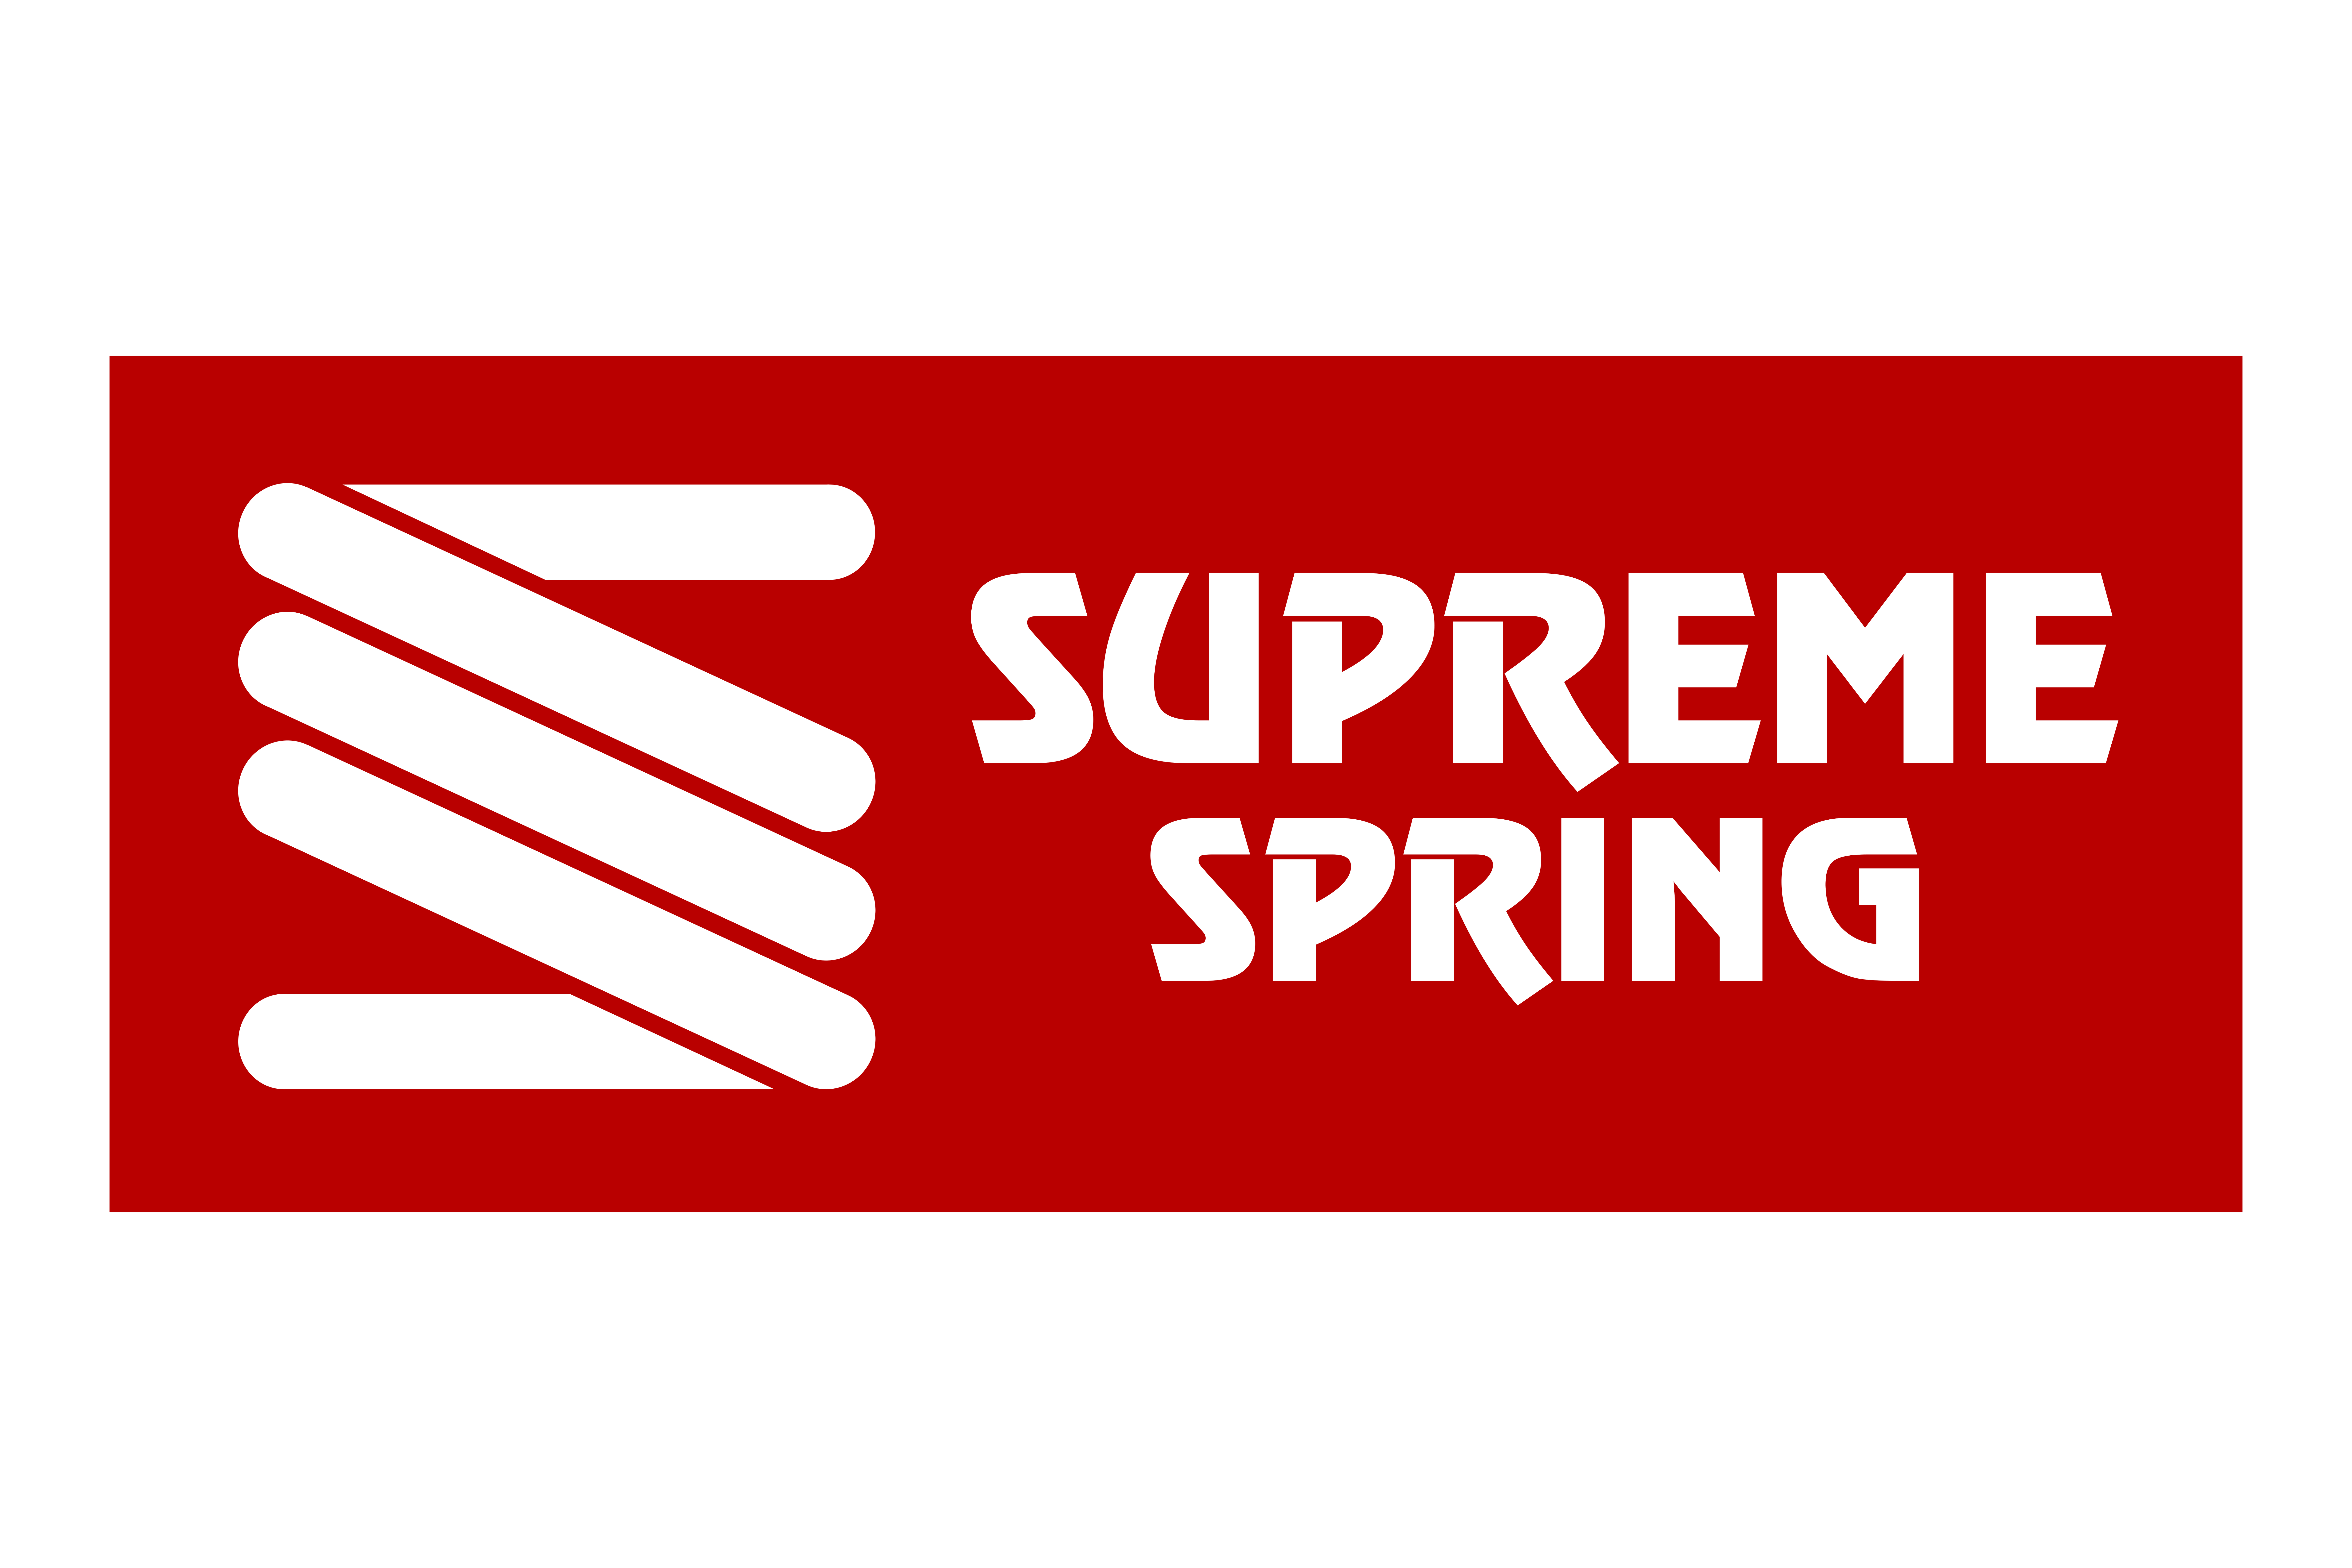 Supreme Spring 4x6